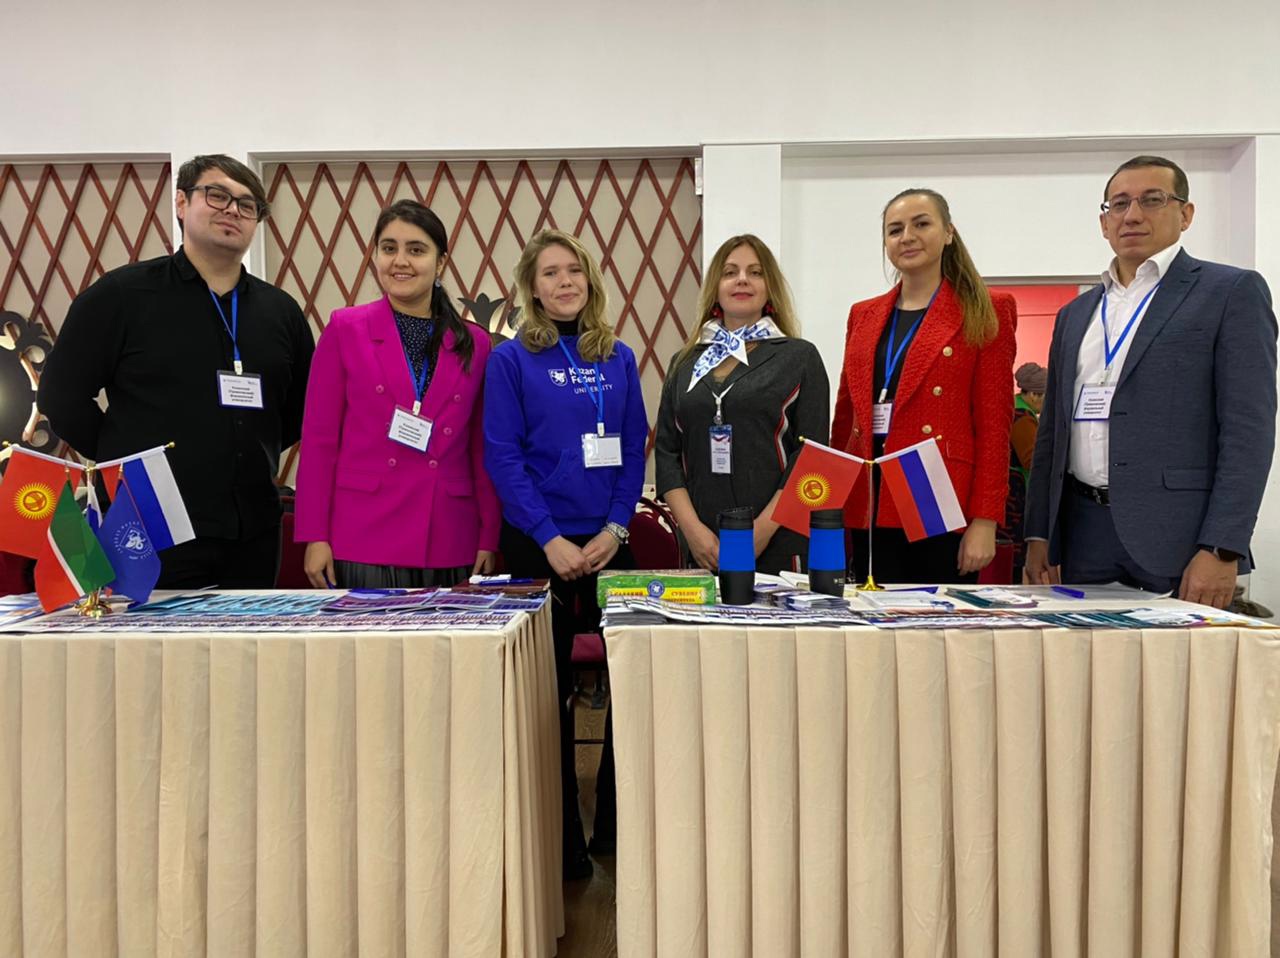 Образовательная выставка российских вузов в Республике Кыргызстан